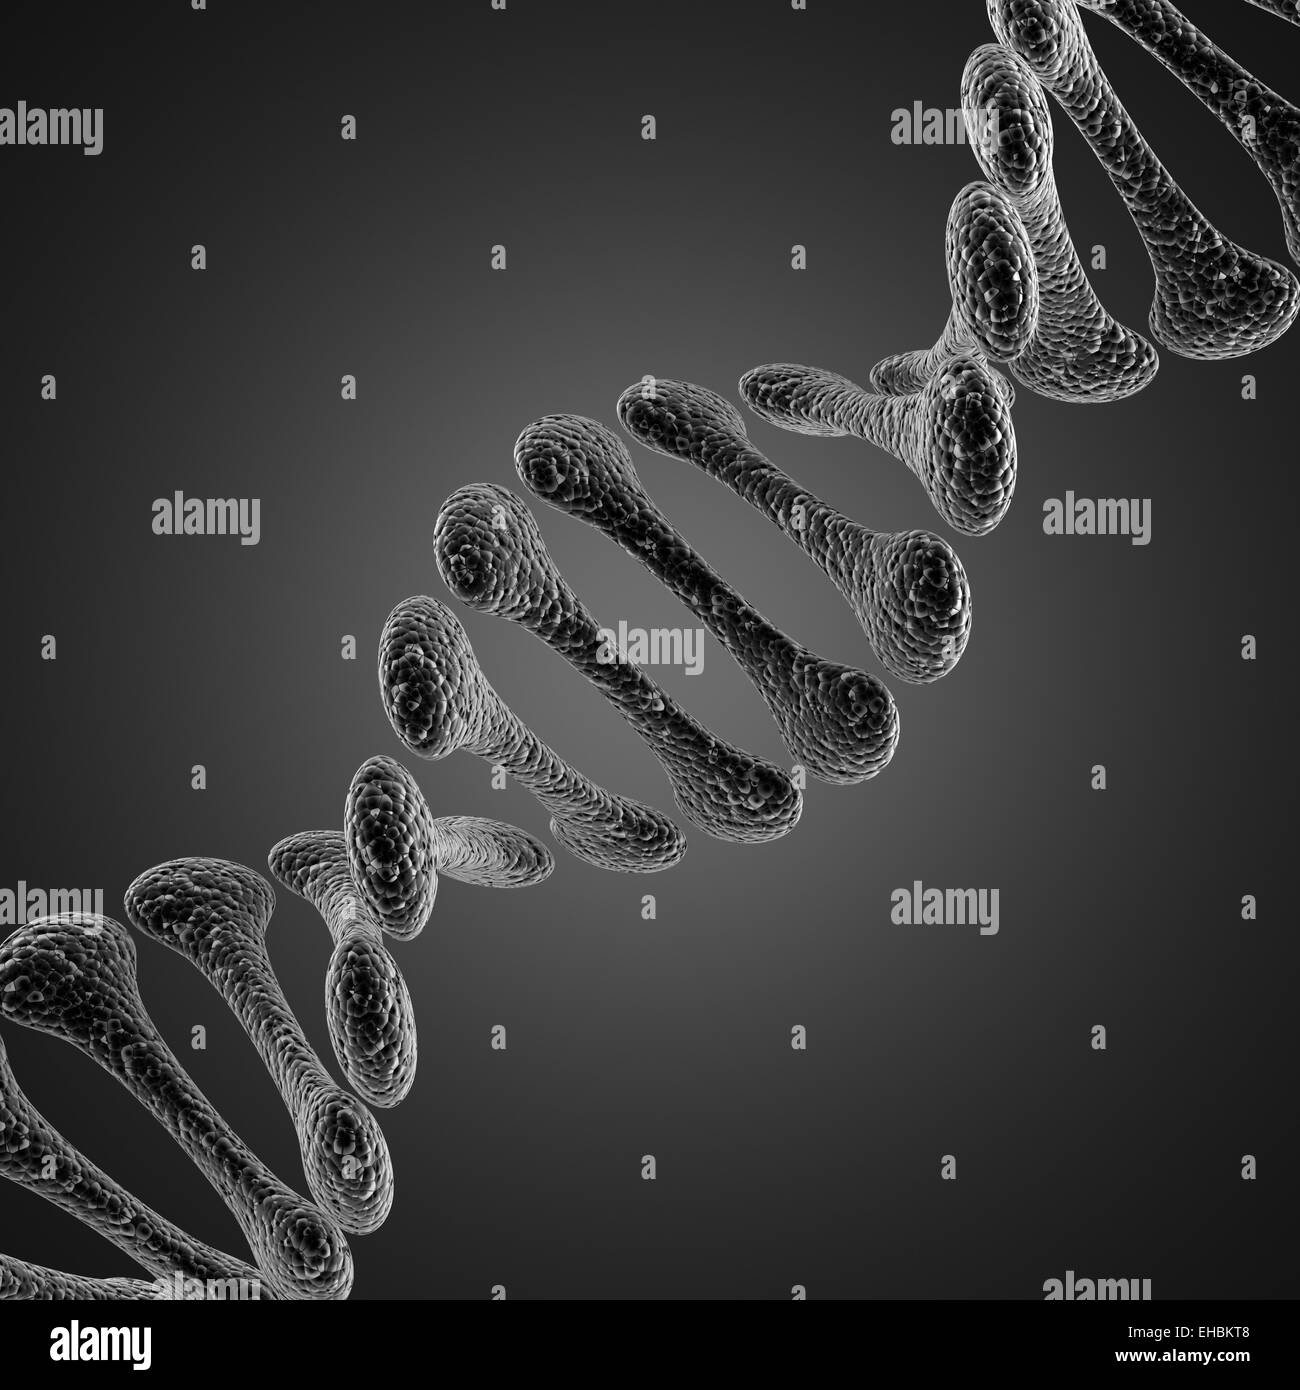 A single DNA scientific illustration Stock Photo